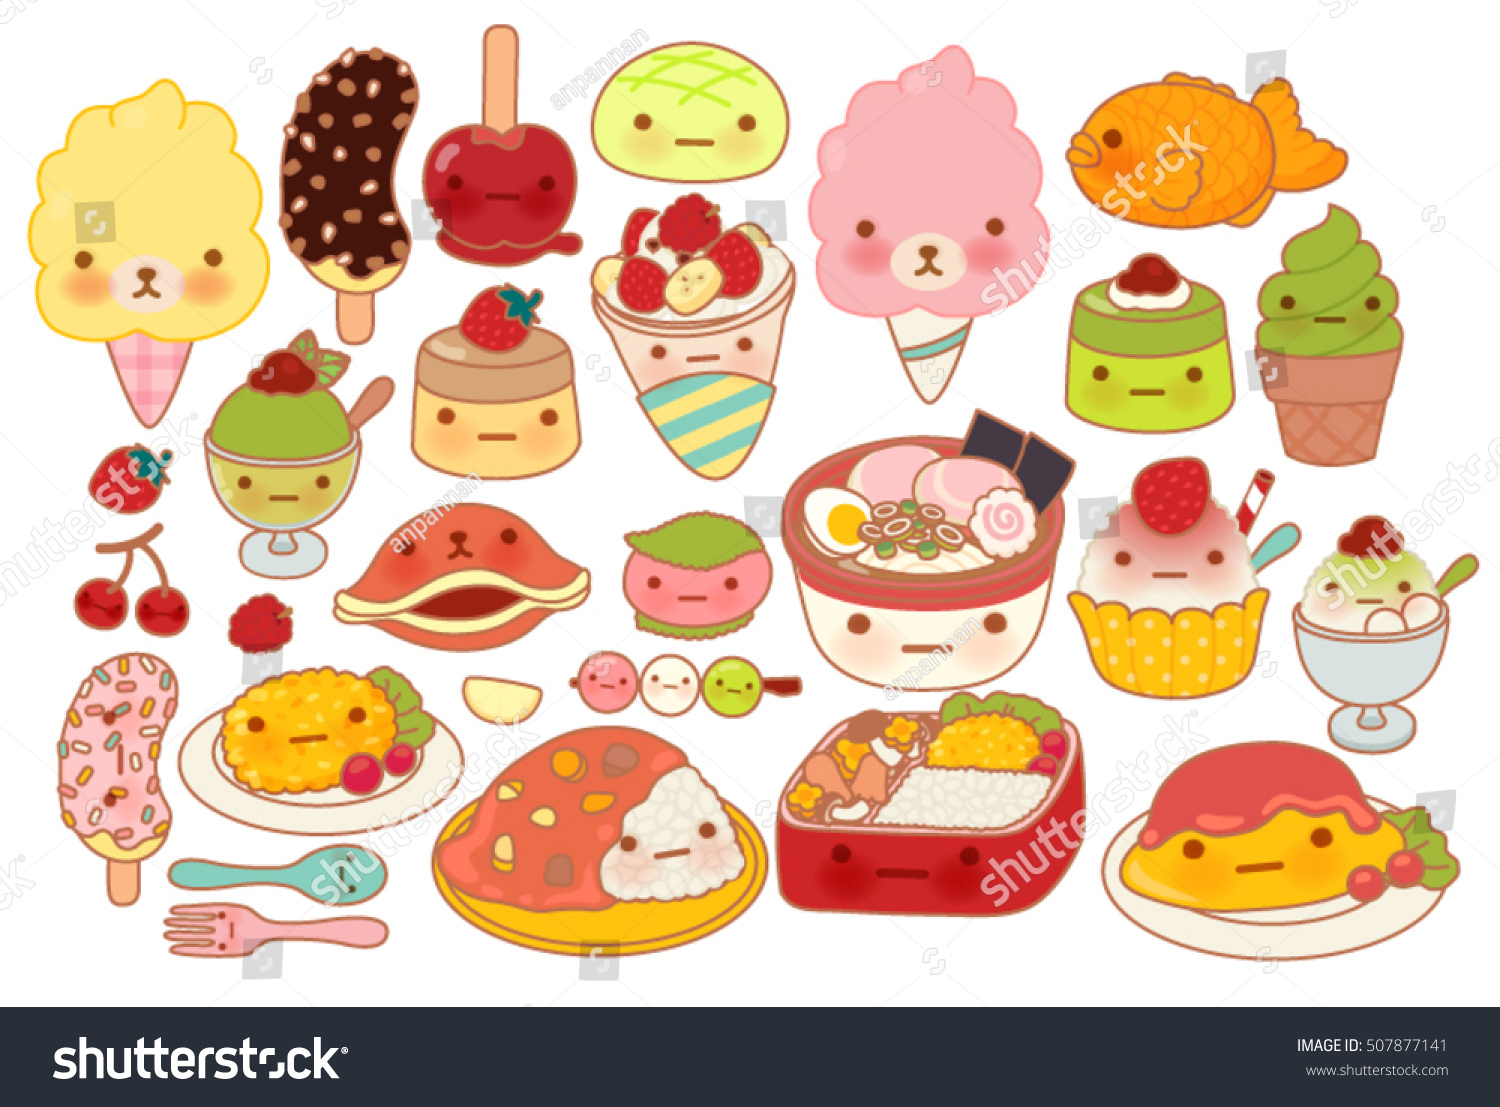 白いベクター画像ファイルeps10に愛らしい日本の赤ちゃん食べ物の落書きアイコン かわいいオムレツ かわいいデザート 甘いチョコバナナ かわいいプリン 子どものようなまんがのガーリーラーメンのコレクション のベクター画像素材 ロイヤリティフリー